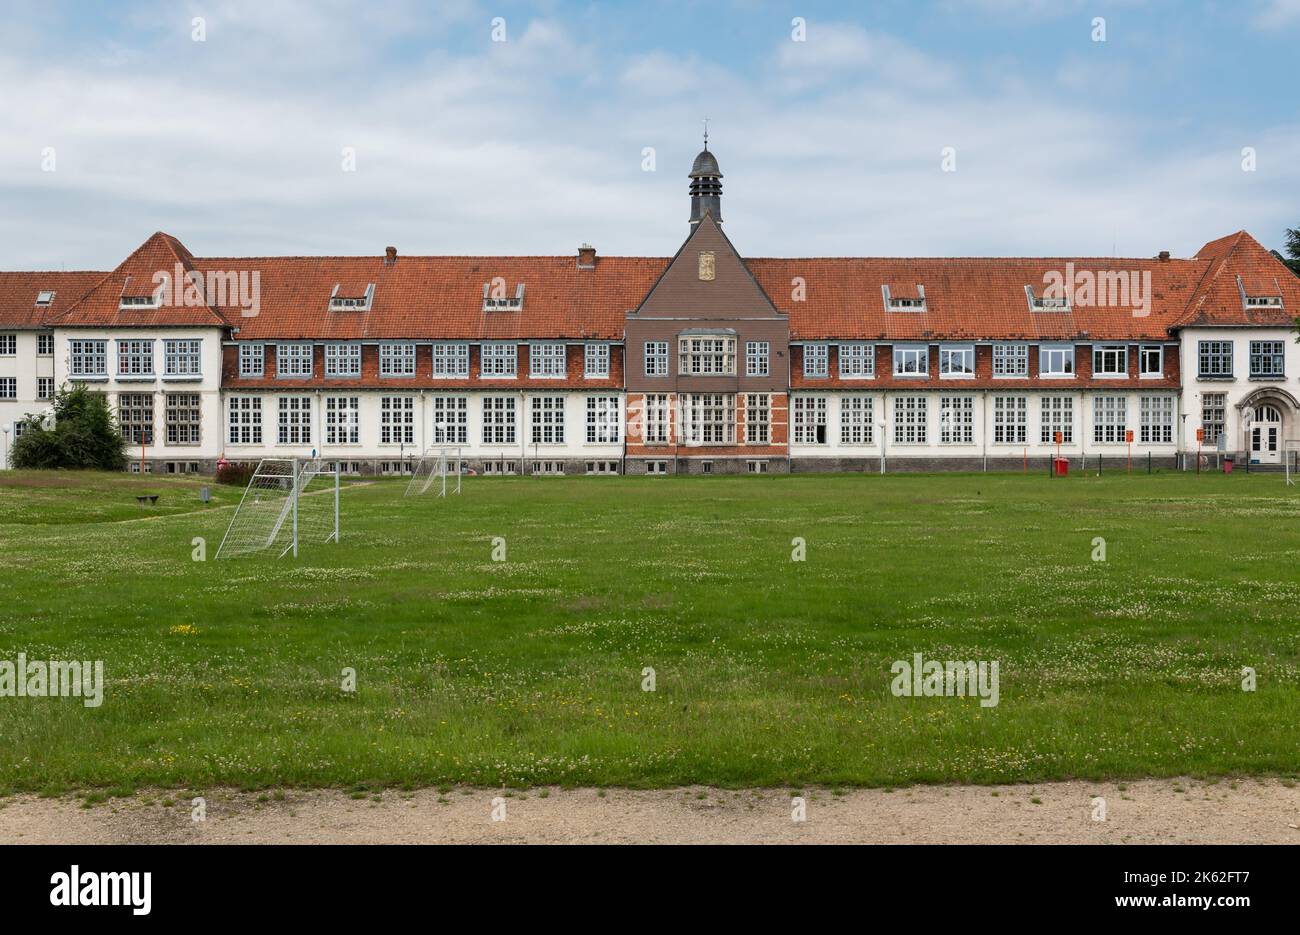 Wetteren, East Flanders Region, Belgium - 07 15 2021 Neo classical facade of a high school building Stock Photo